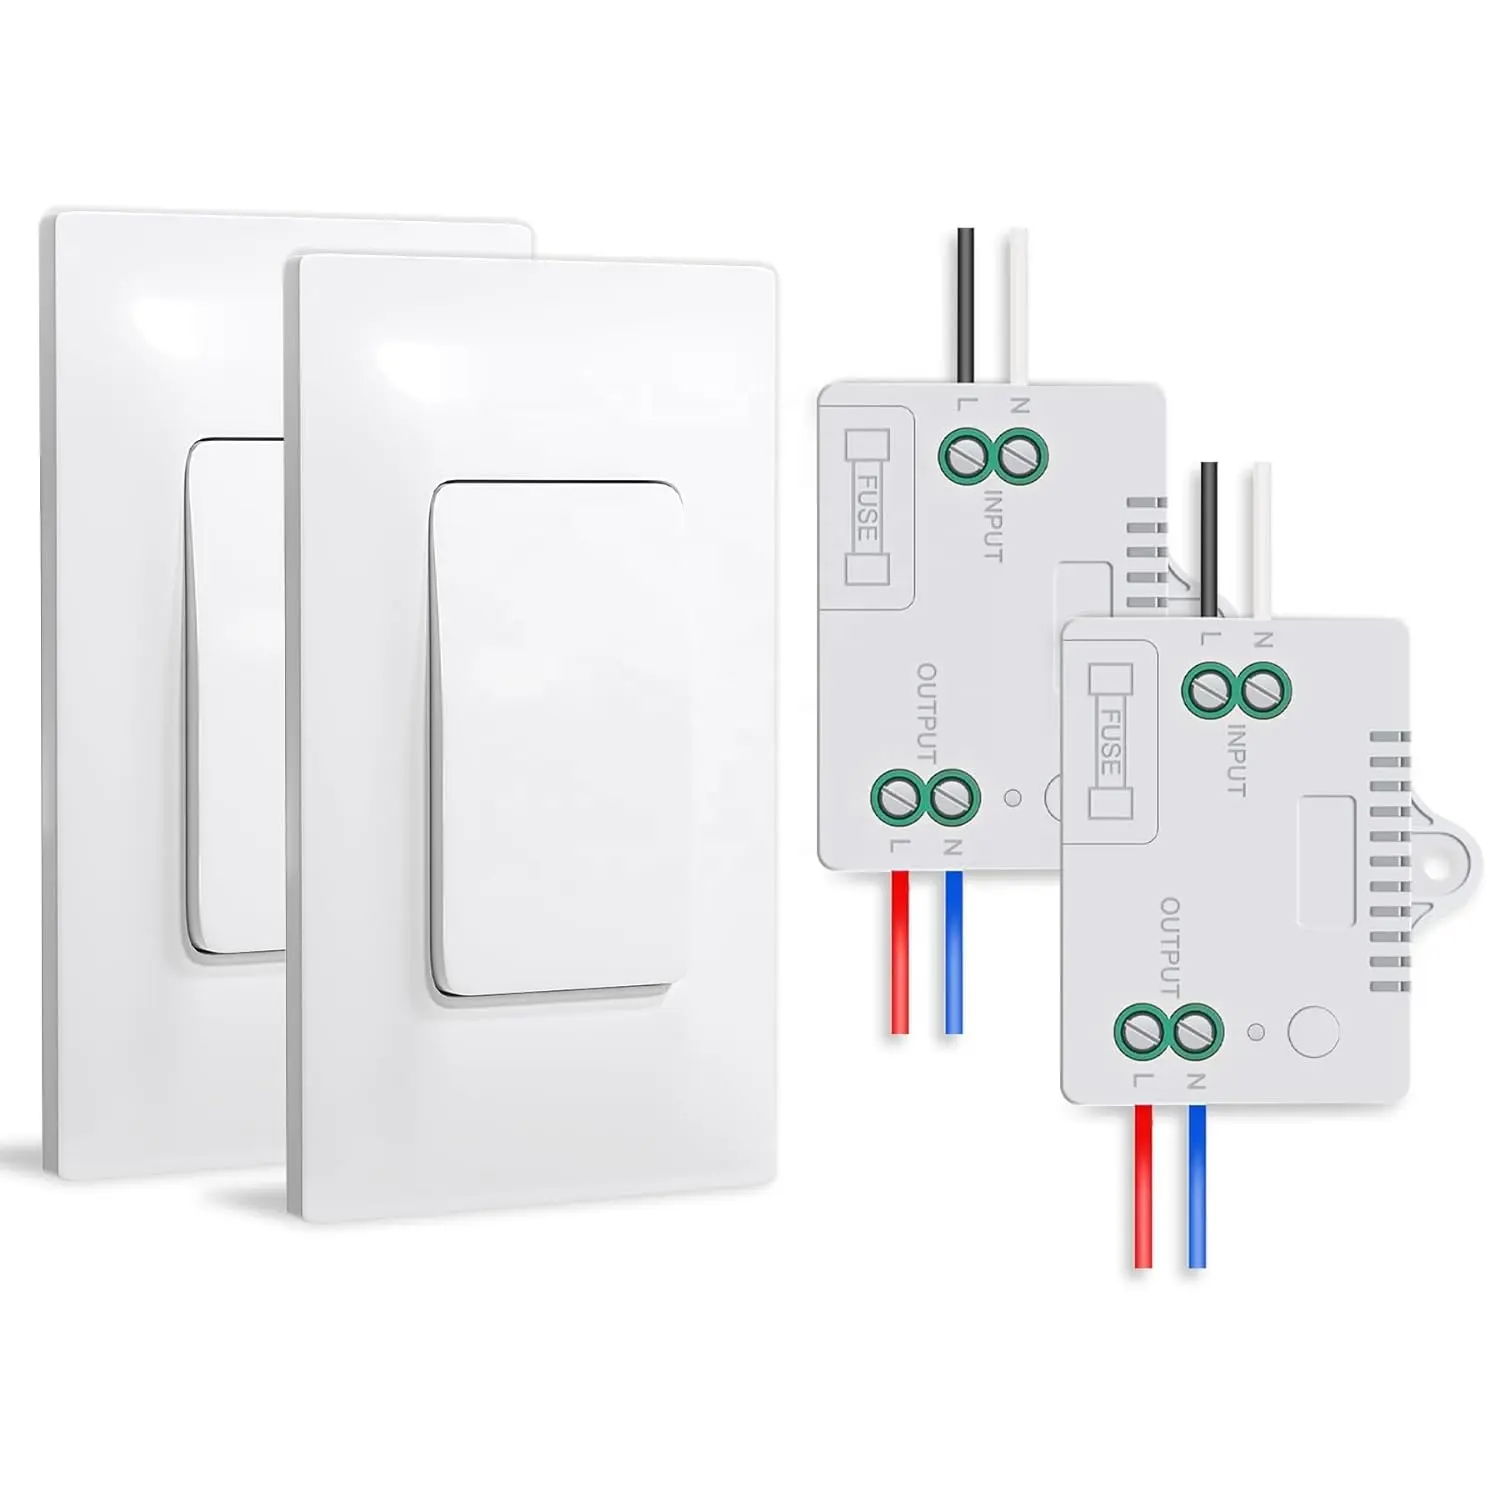 Autoalimentado (no requiere batería) Interruptor de luz inalámbrico y kit de receptor Interruptor de pared Interruptor de iluminación de control remoto WiFi